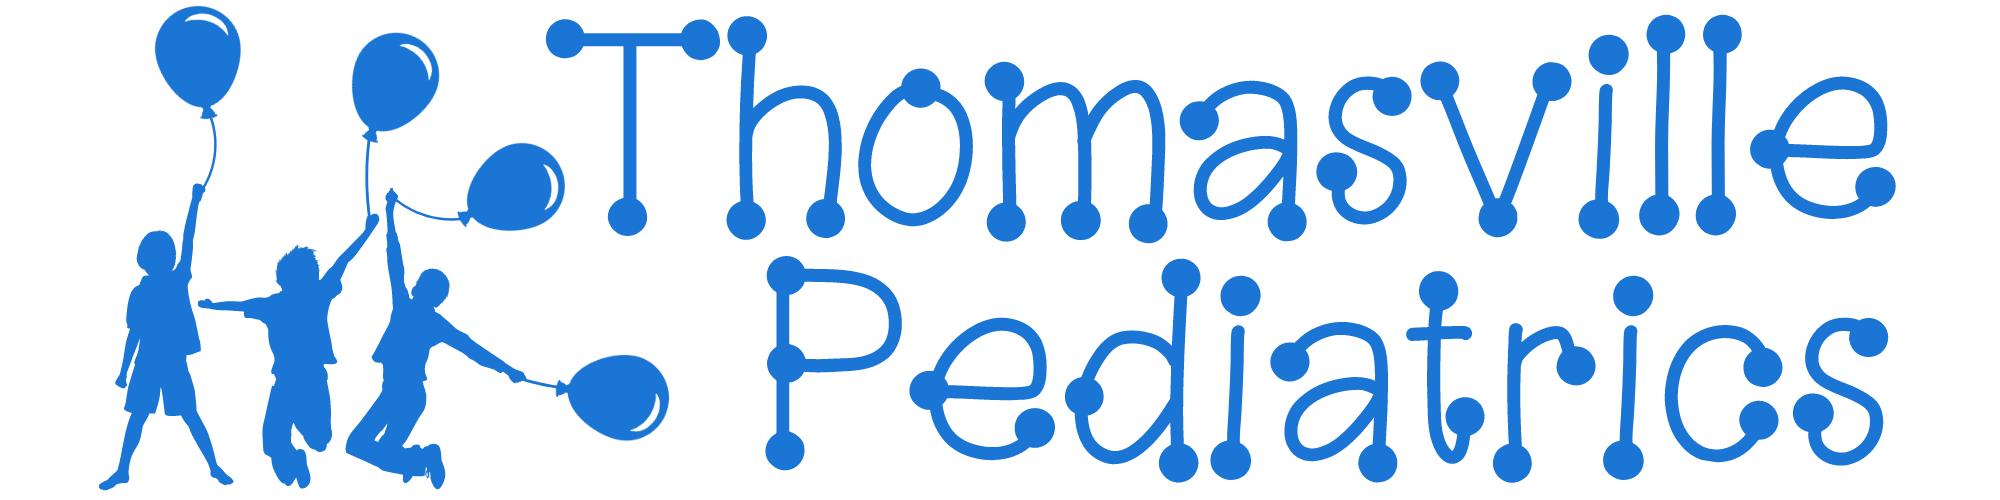 Thomasville Pediatrics